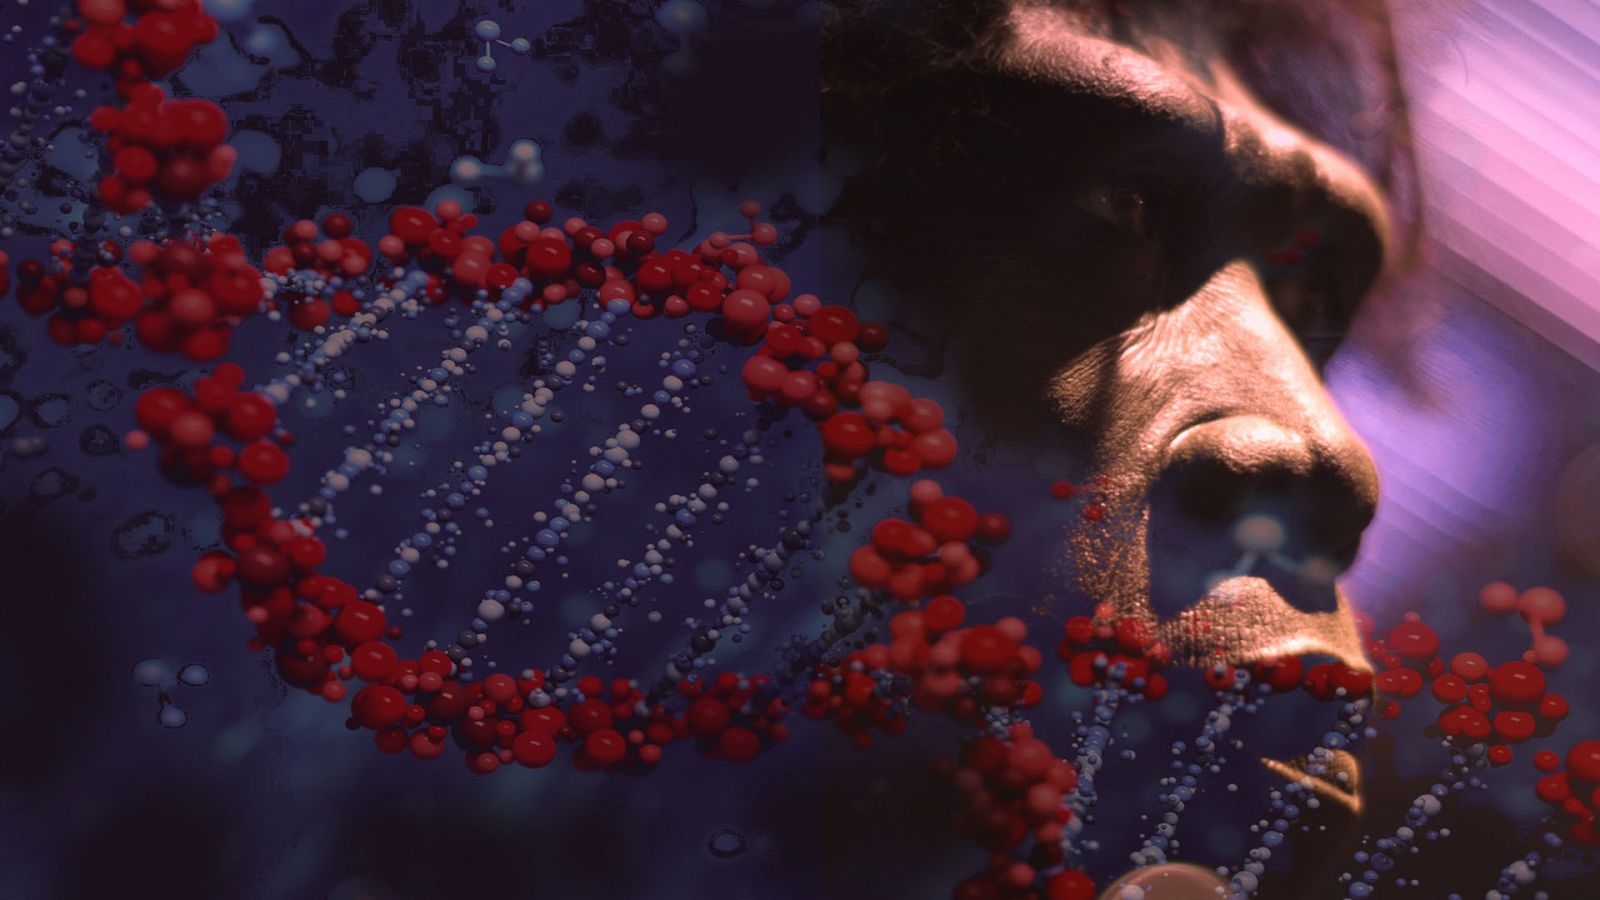 Hélice de ADN recreado sobre la imagen de una escultura de un neandertal